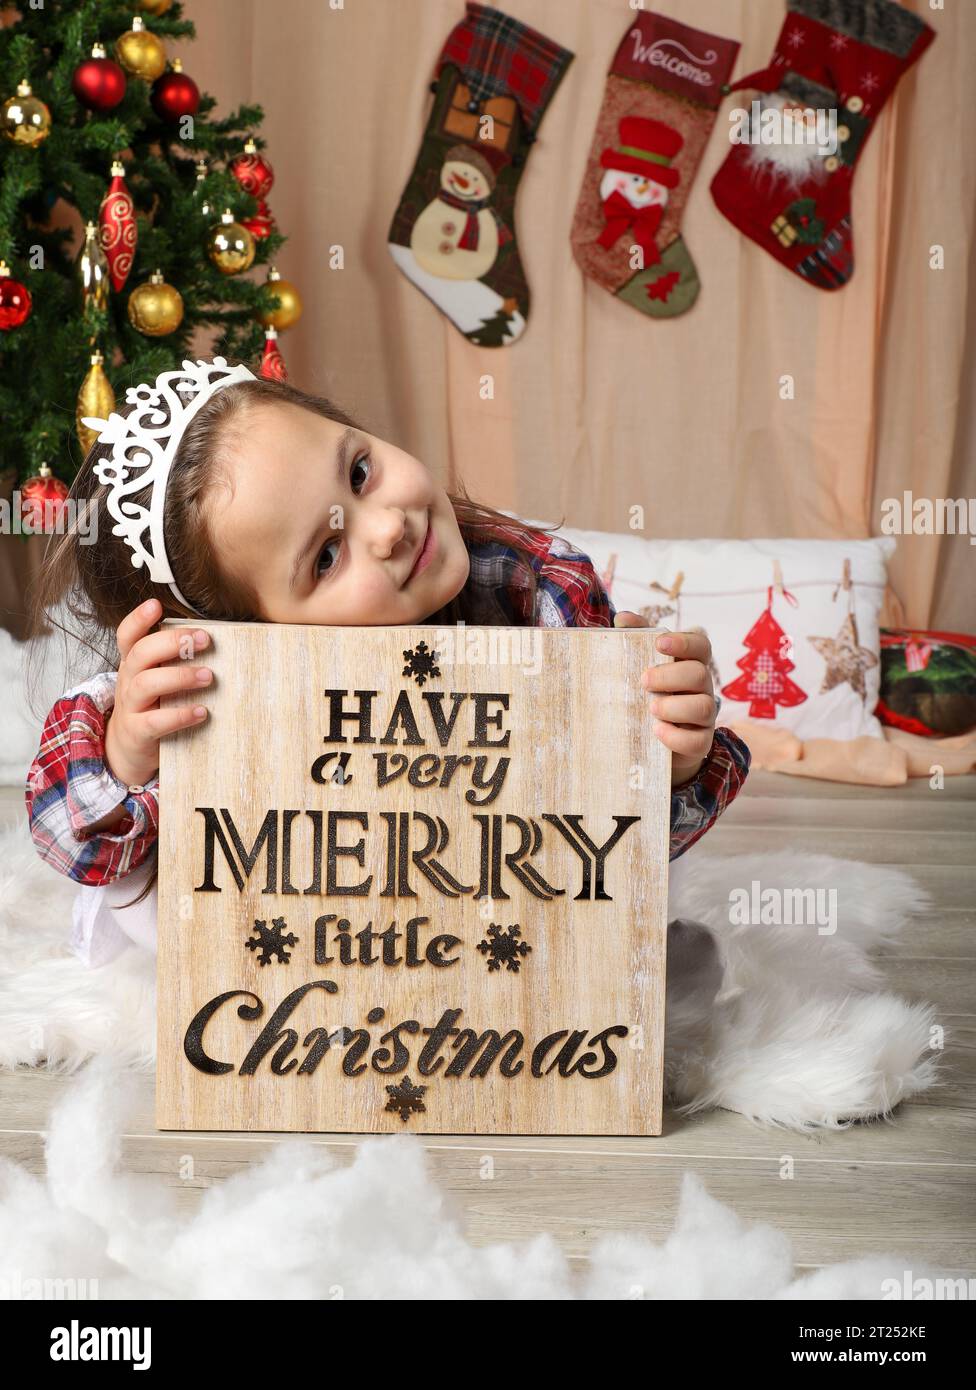 Hermosa niña frente al árbol de Navidad Foto de stock